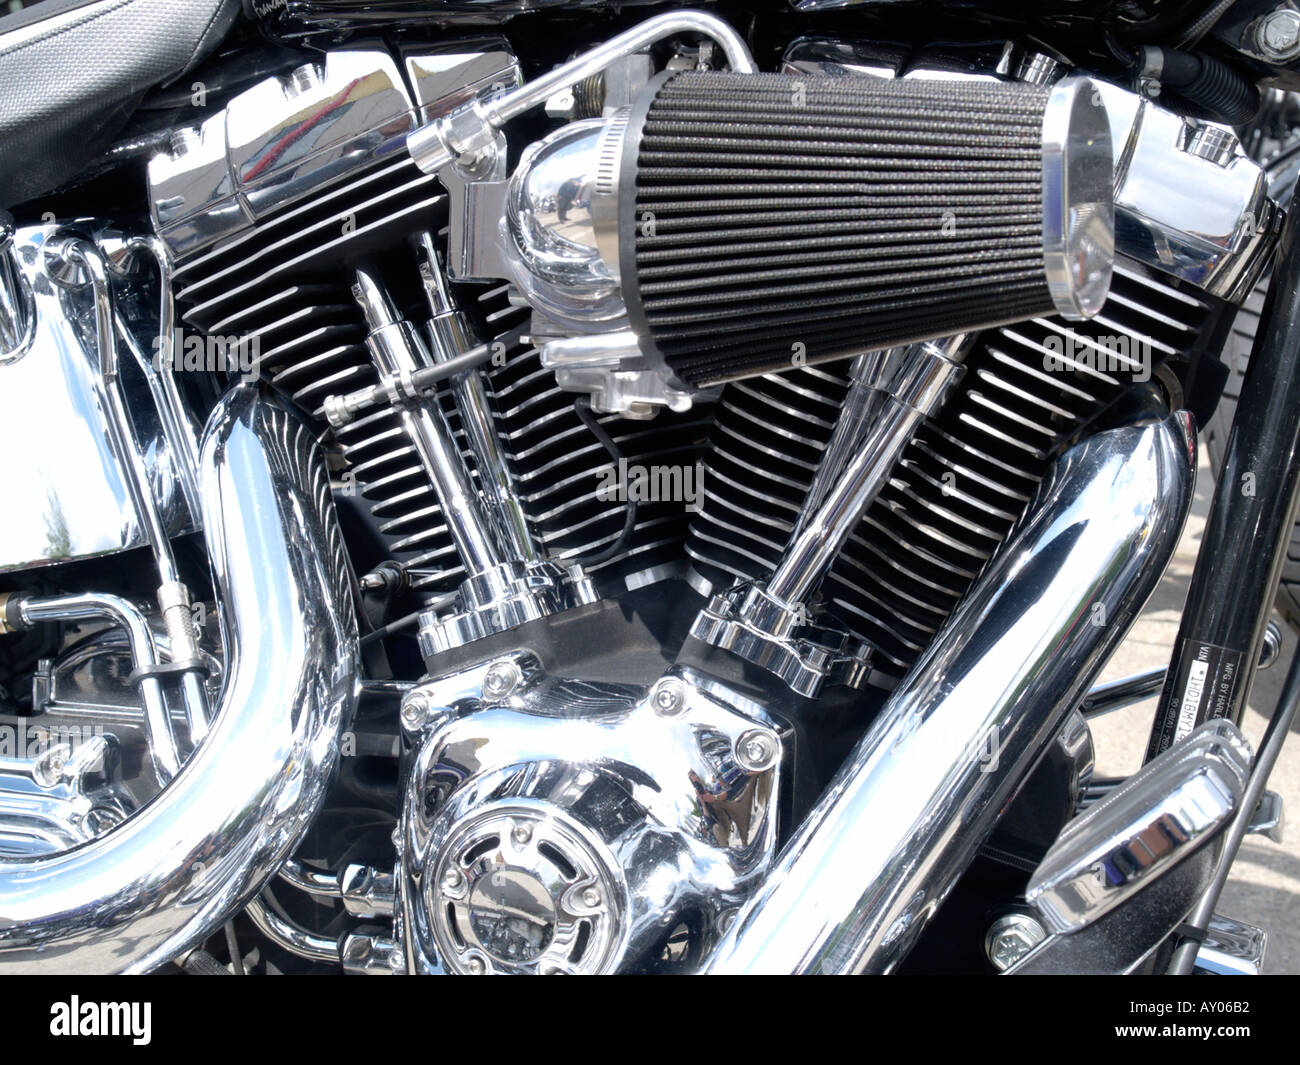 Poli brillant Harley Davidson v twin avec beaucoup de chrome et un filtre à air de rechange Banque D'Images